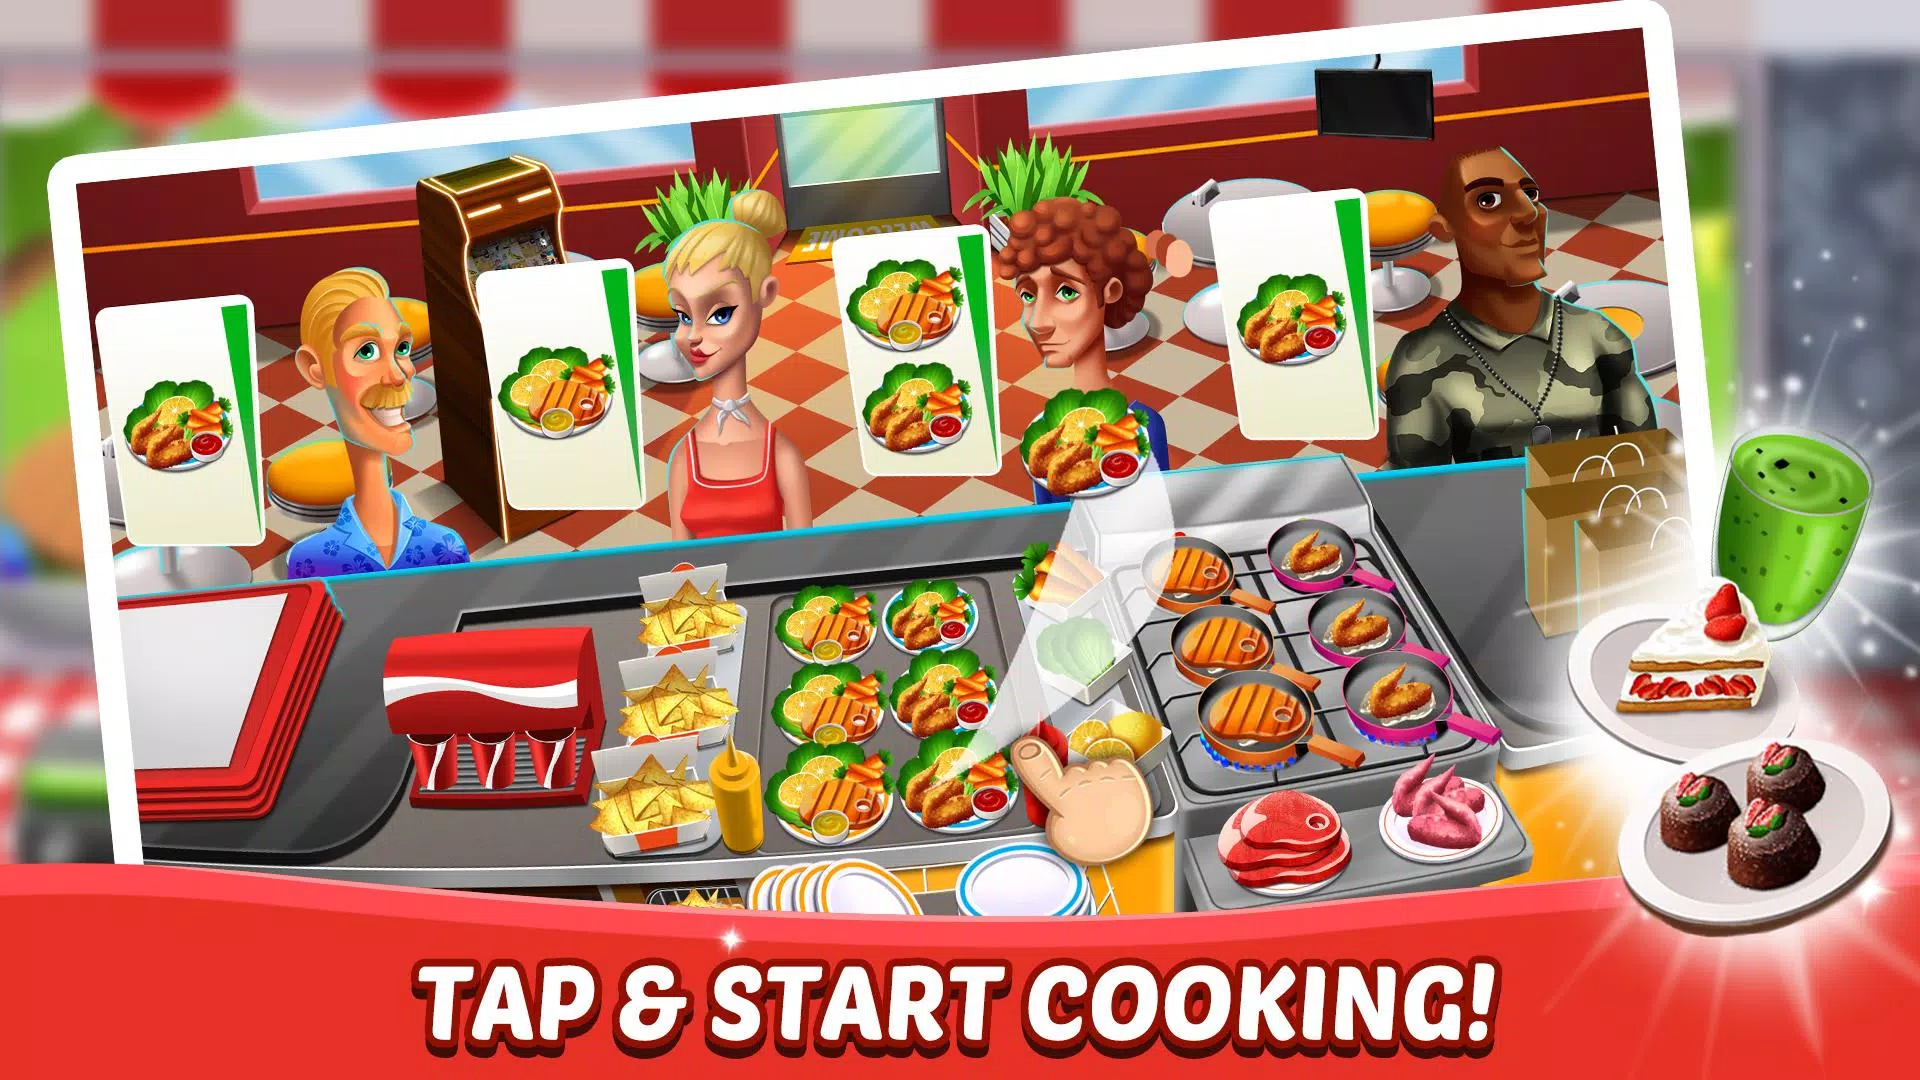 Download do APK de Chefe Fever - Jogos de Cozinha & Restaurante para  Android, jogos de restaurante android - thirstymag.com